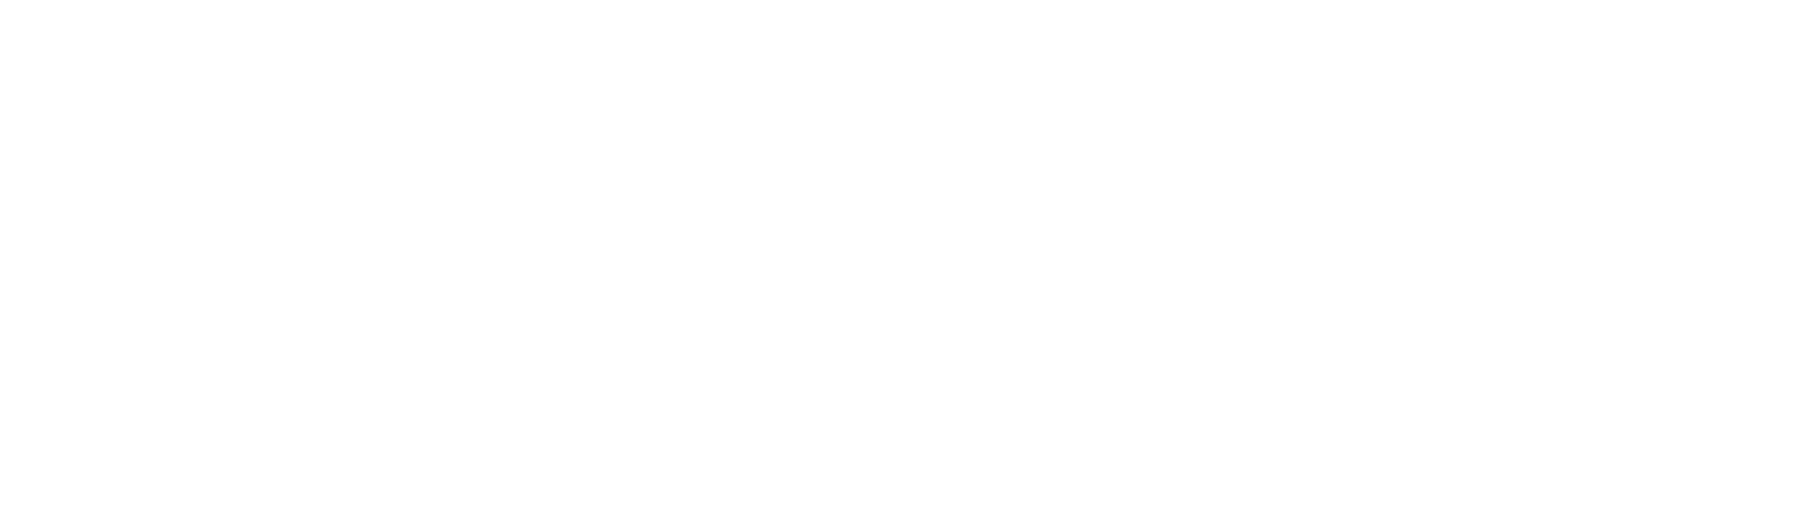 Osborne Law Group